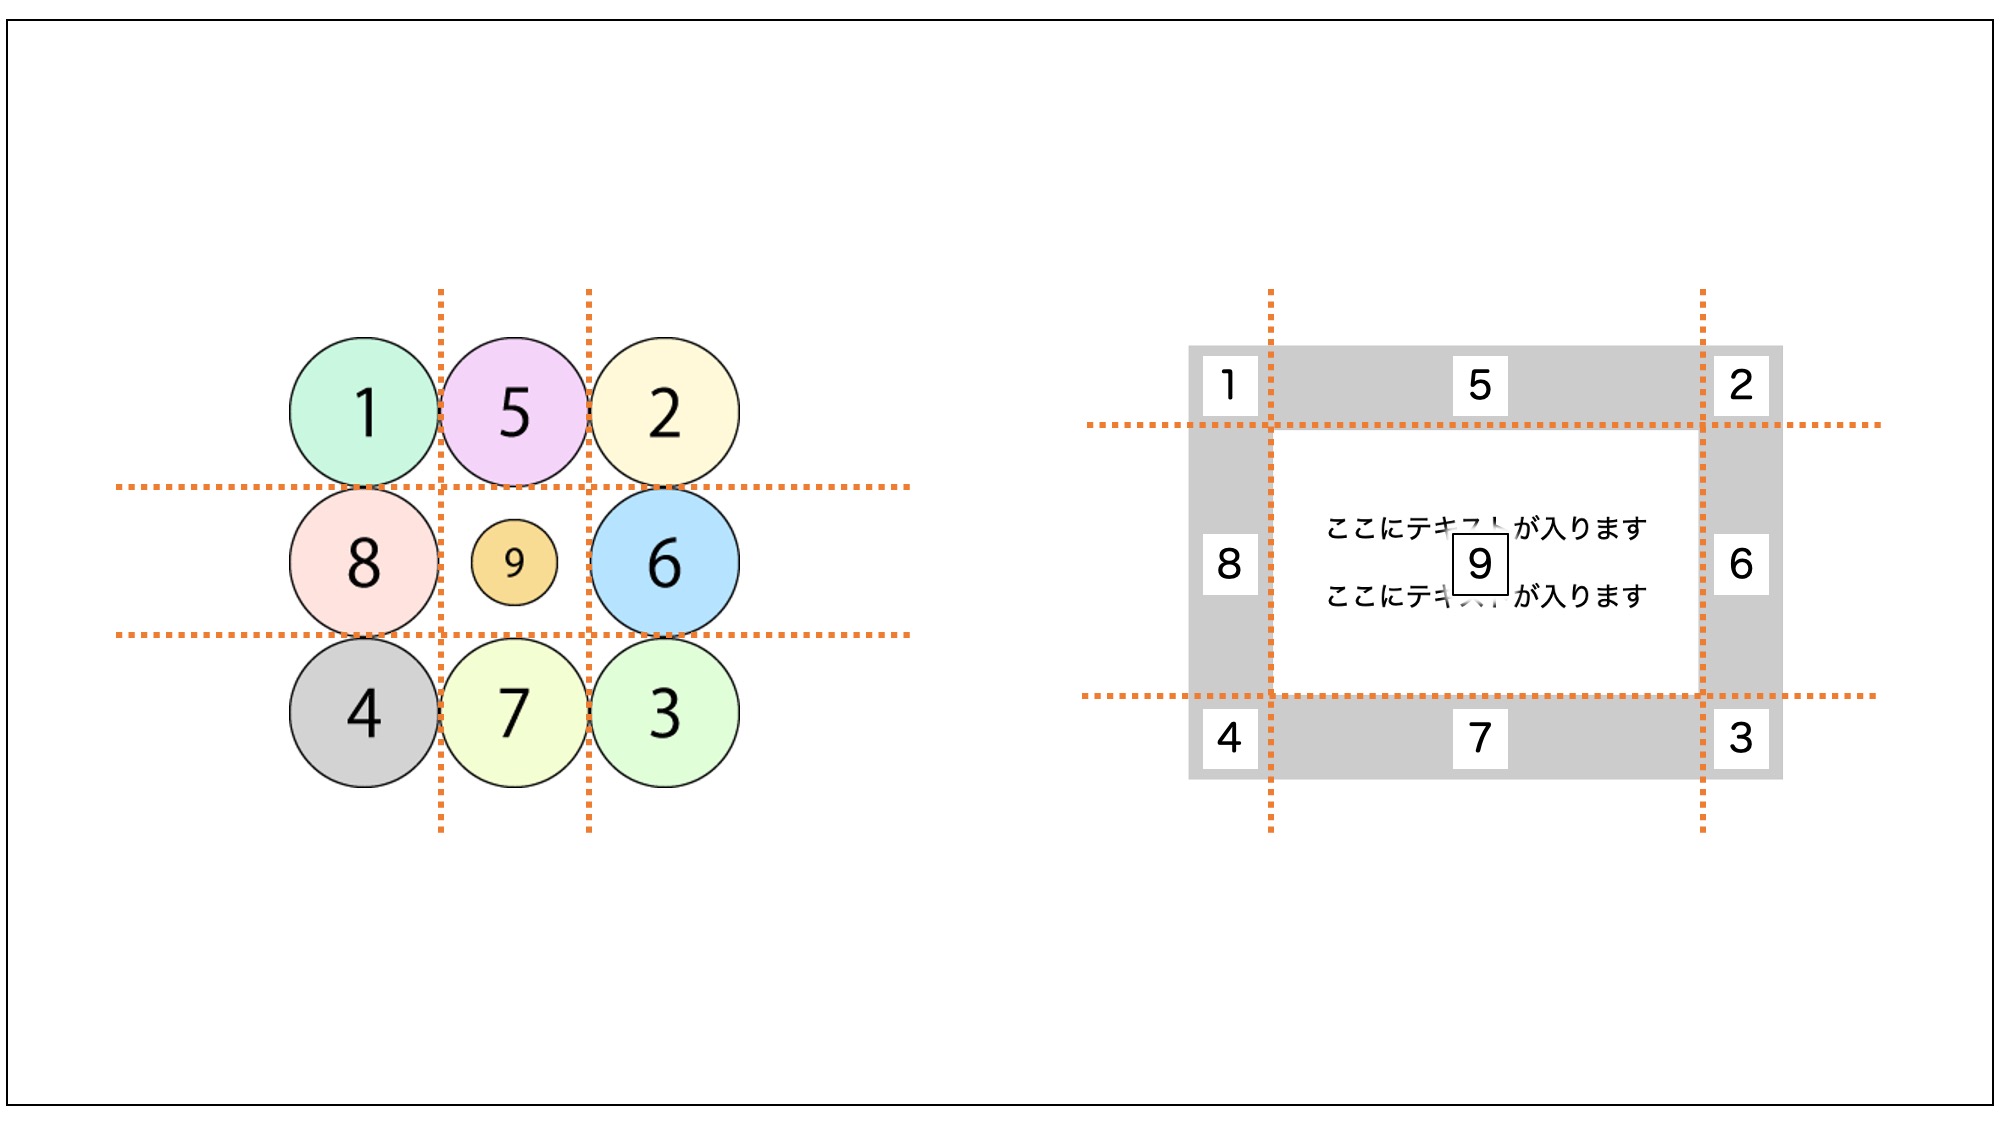 1〜4番の領域は最終的な枠線の4隅に割り当てられ、5〜8番の領域は最終的な枠線の4辺に割り当てられる